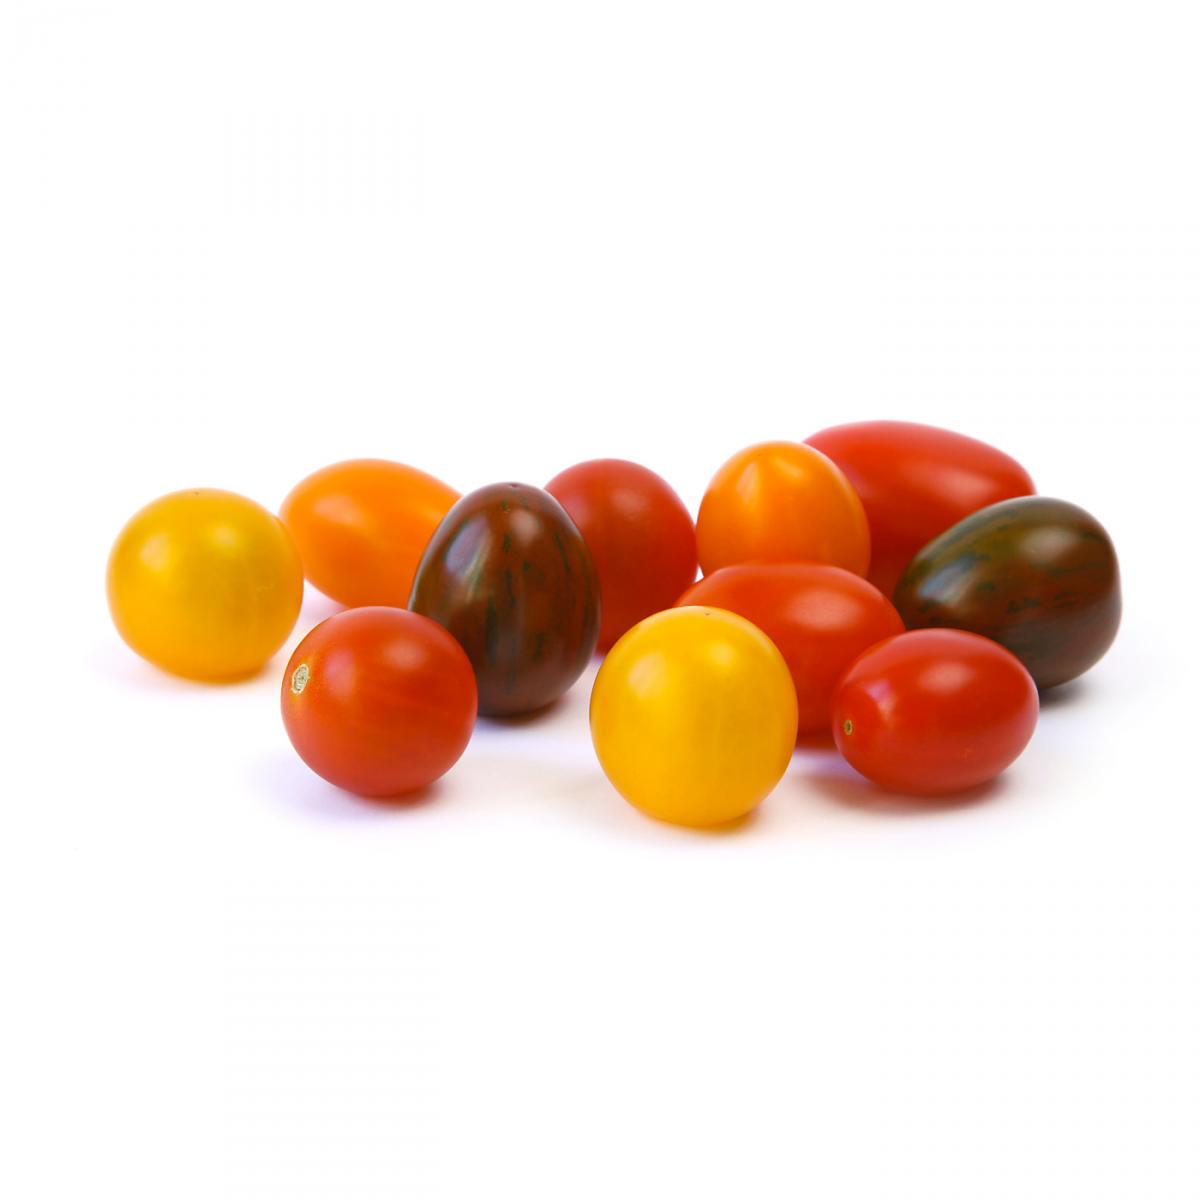 Tomate Cerise Multicolore 250g La Corbeille